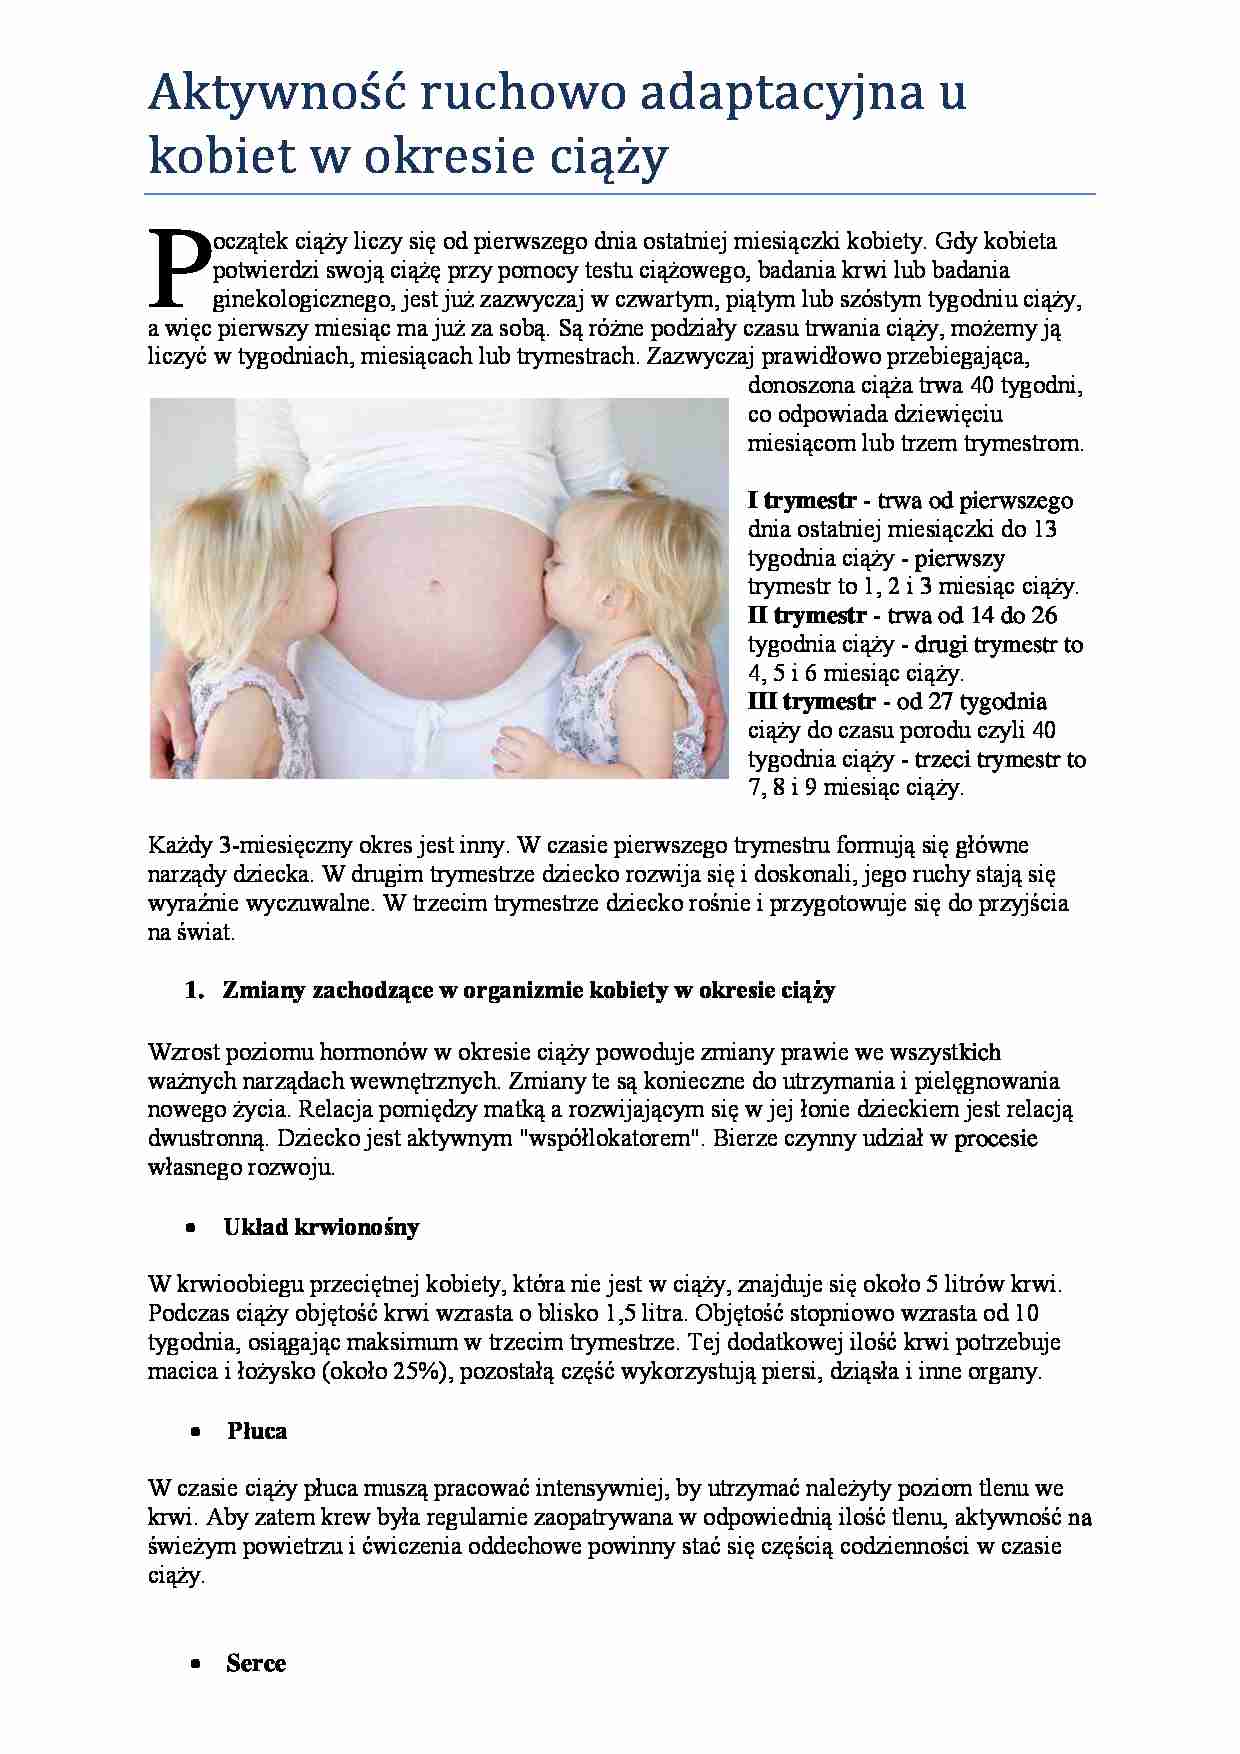 Aktywność ruchowo adaptacyjna u kobiet w okresie ciąży - strona 1